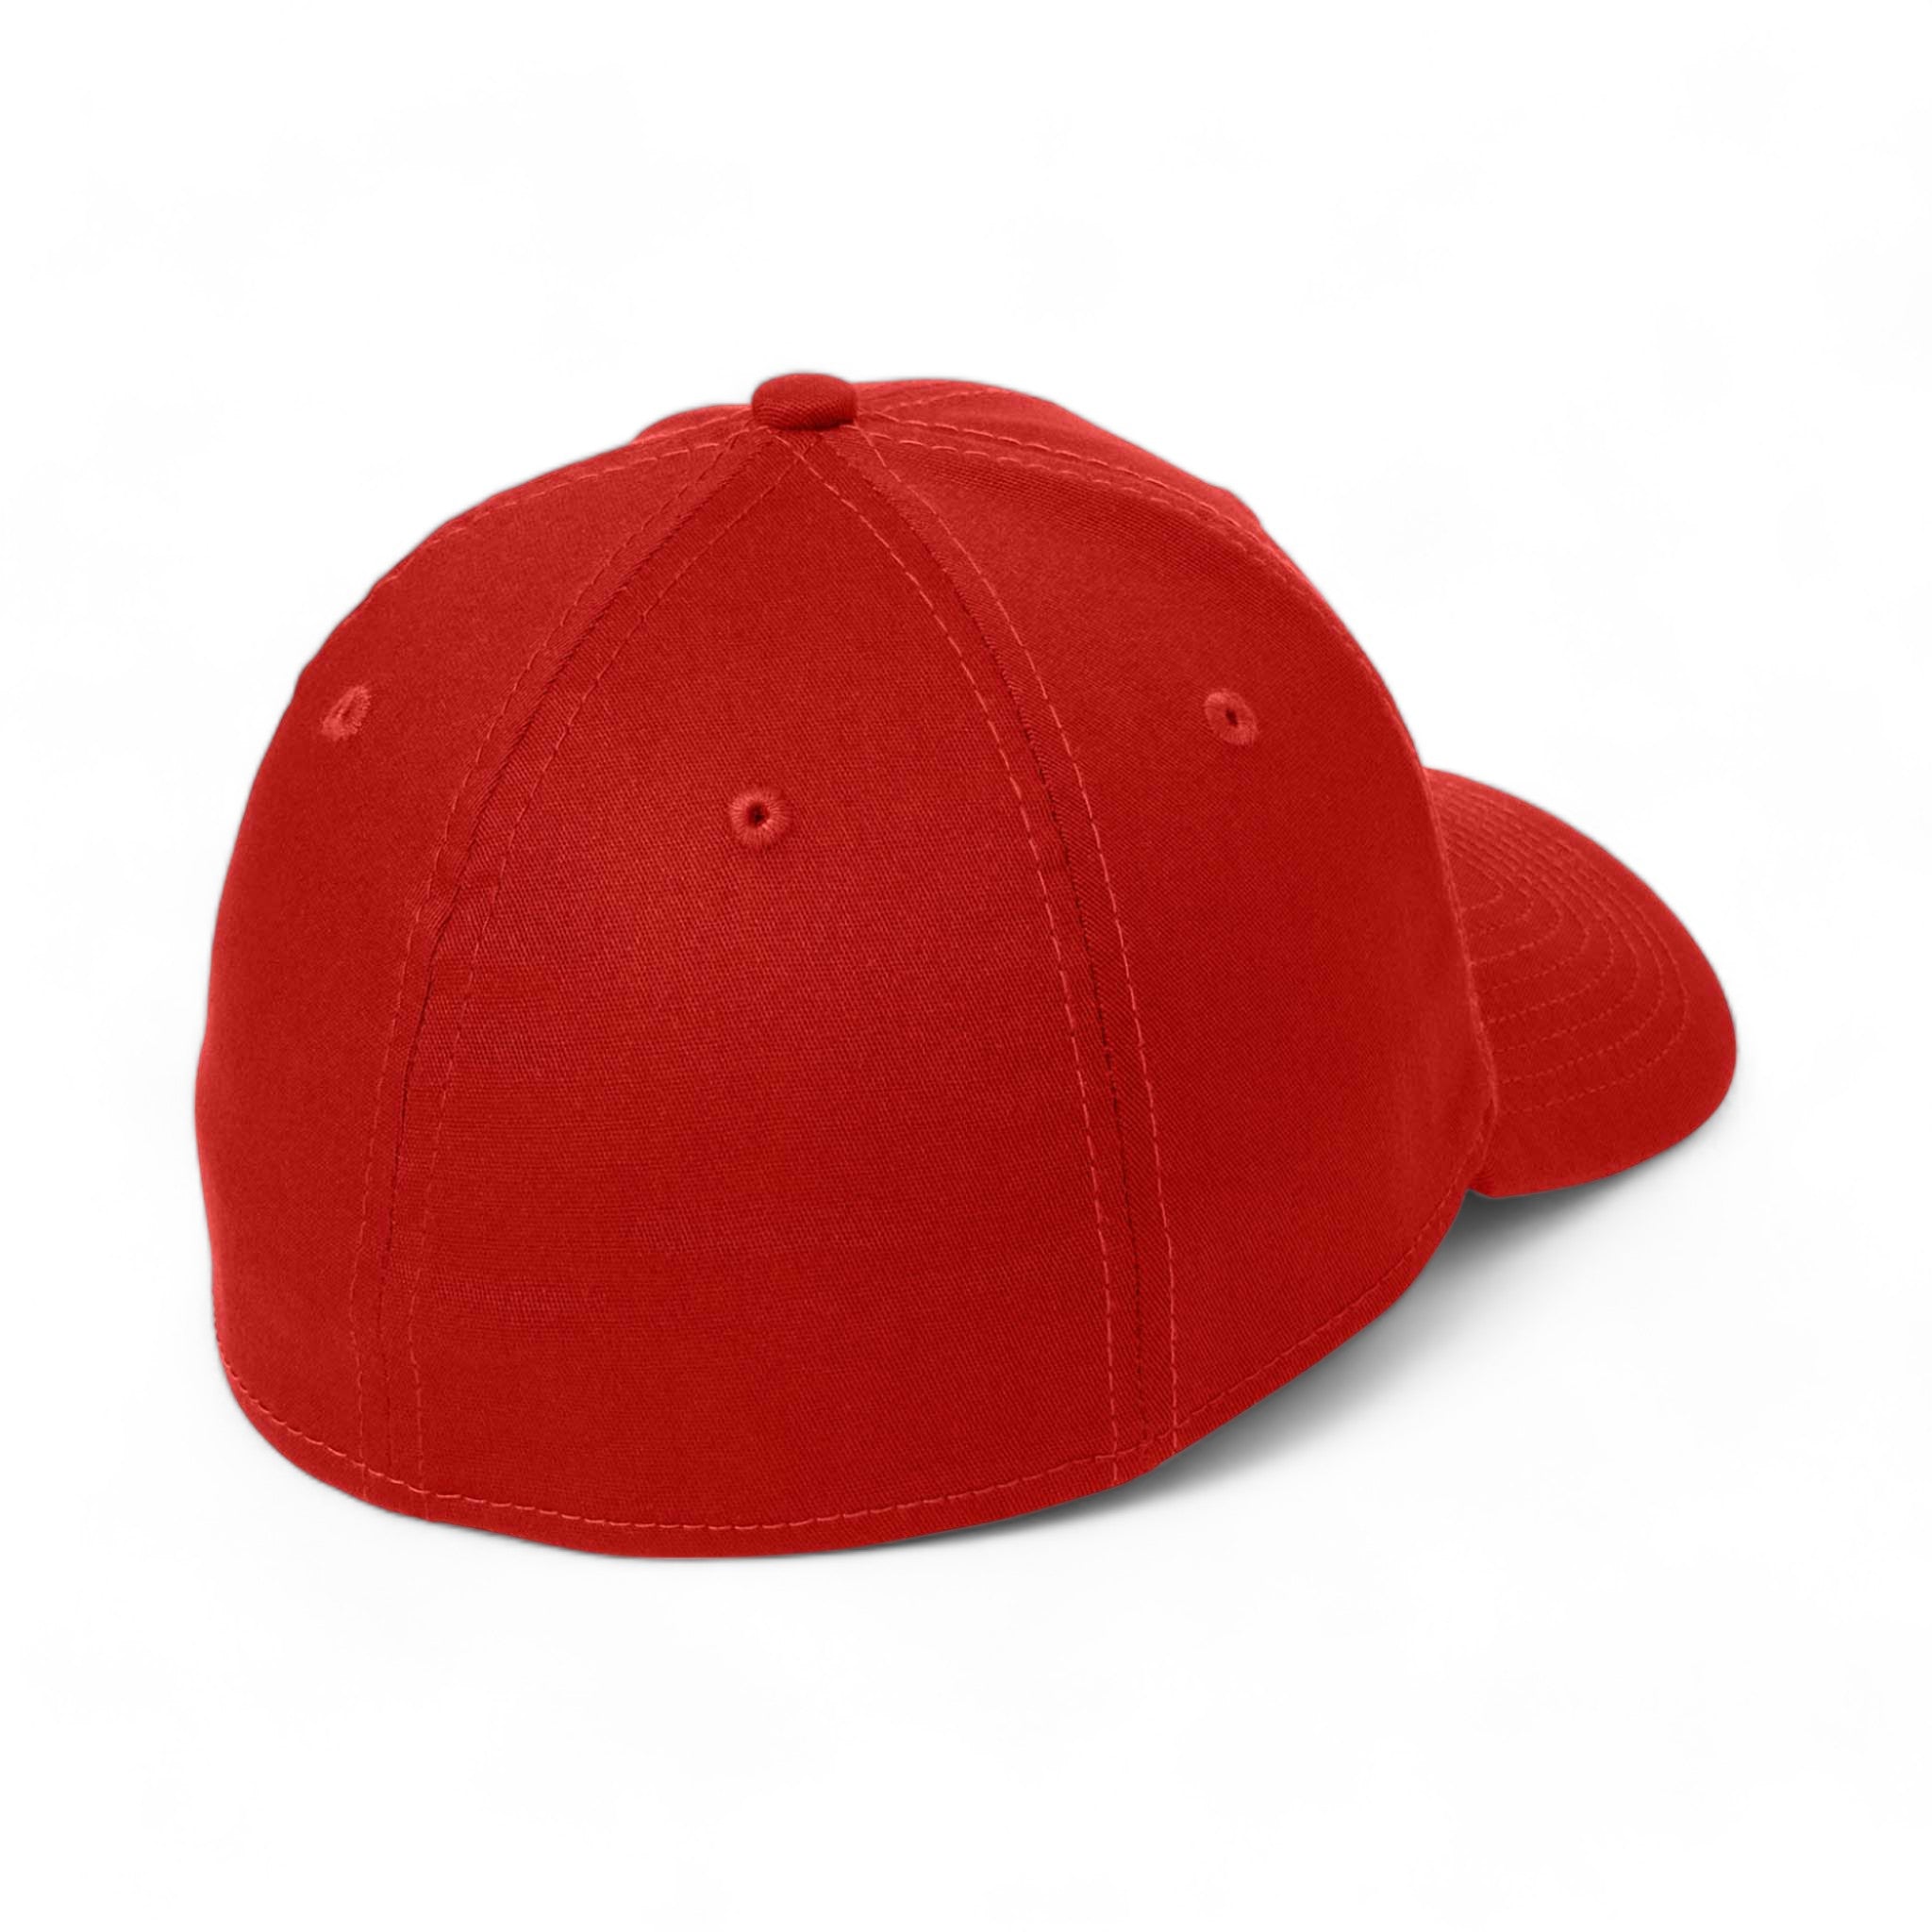 Back view of New Era NE1000 custom hat in scarlet red